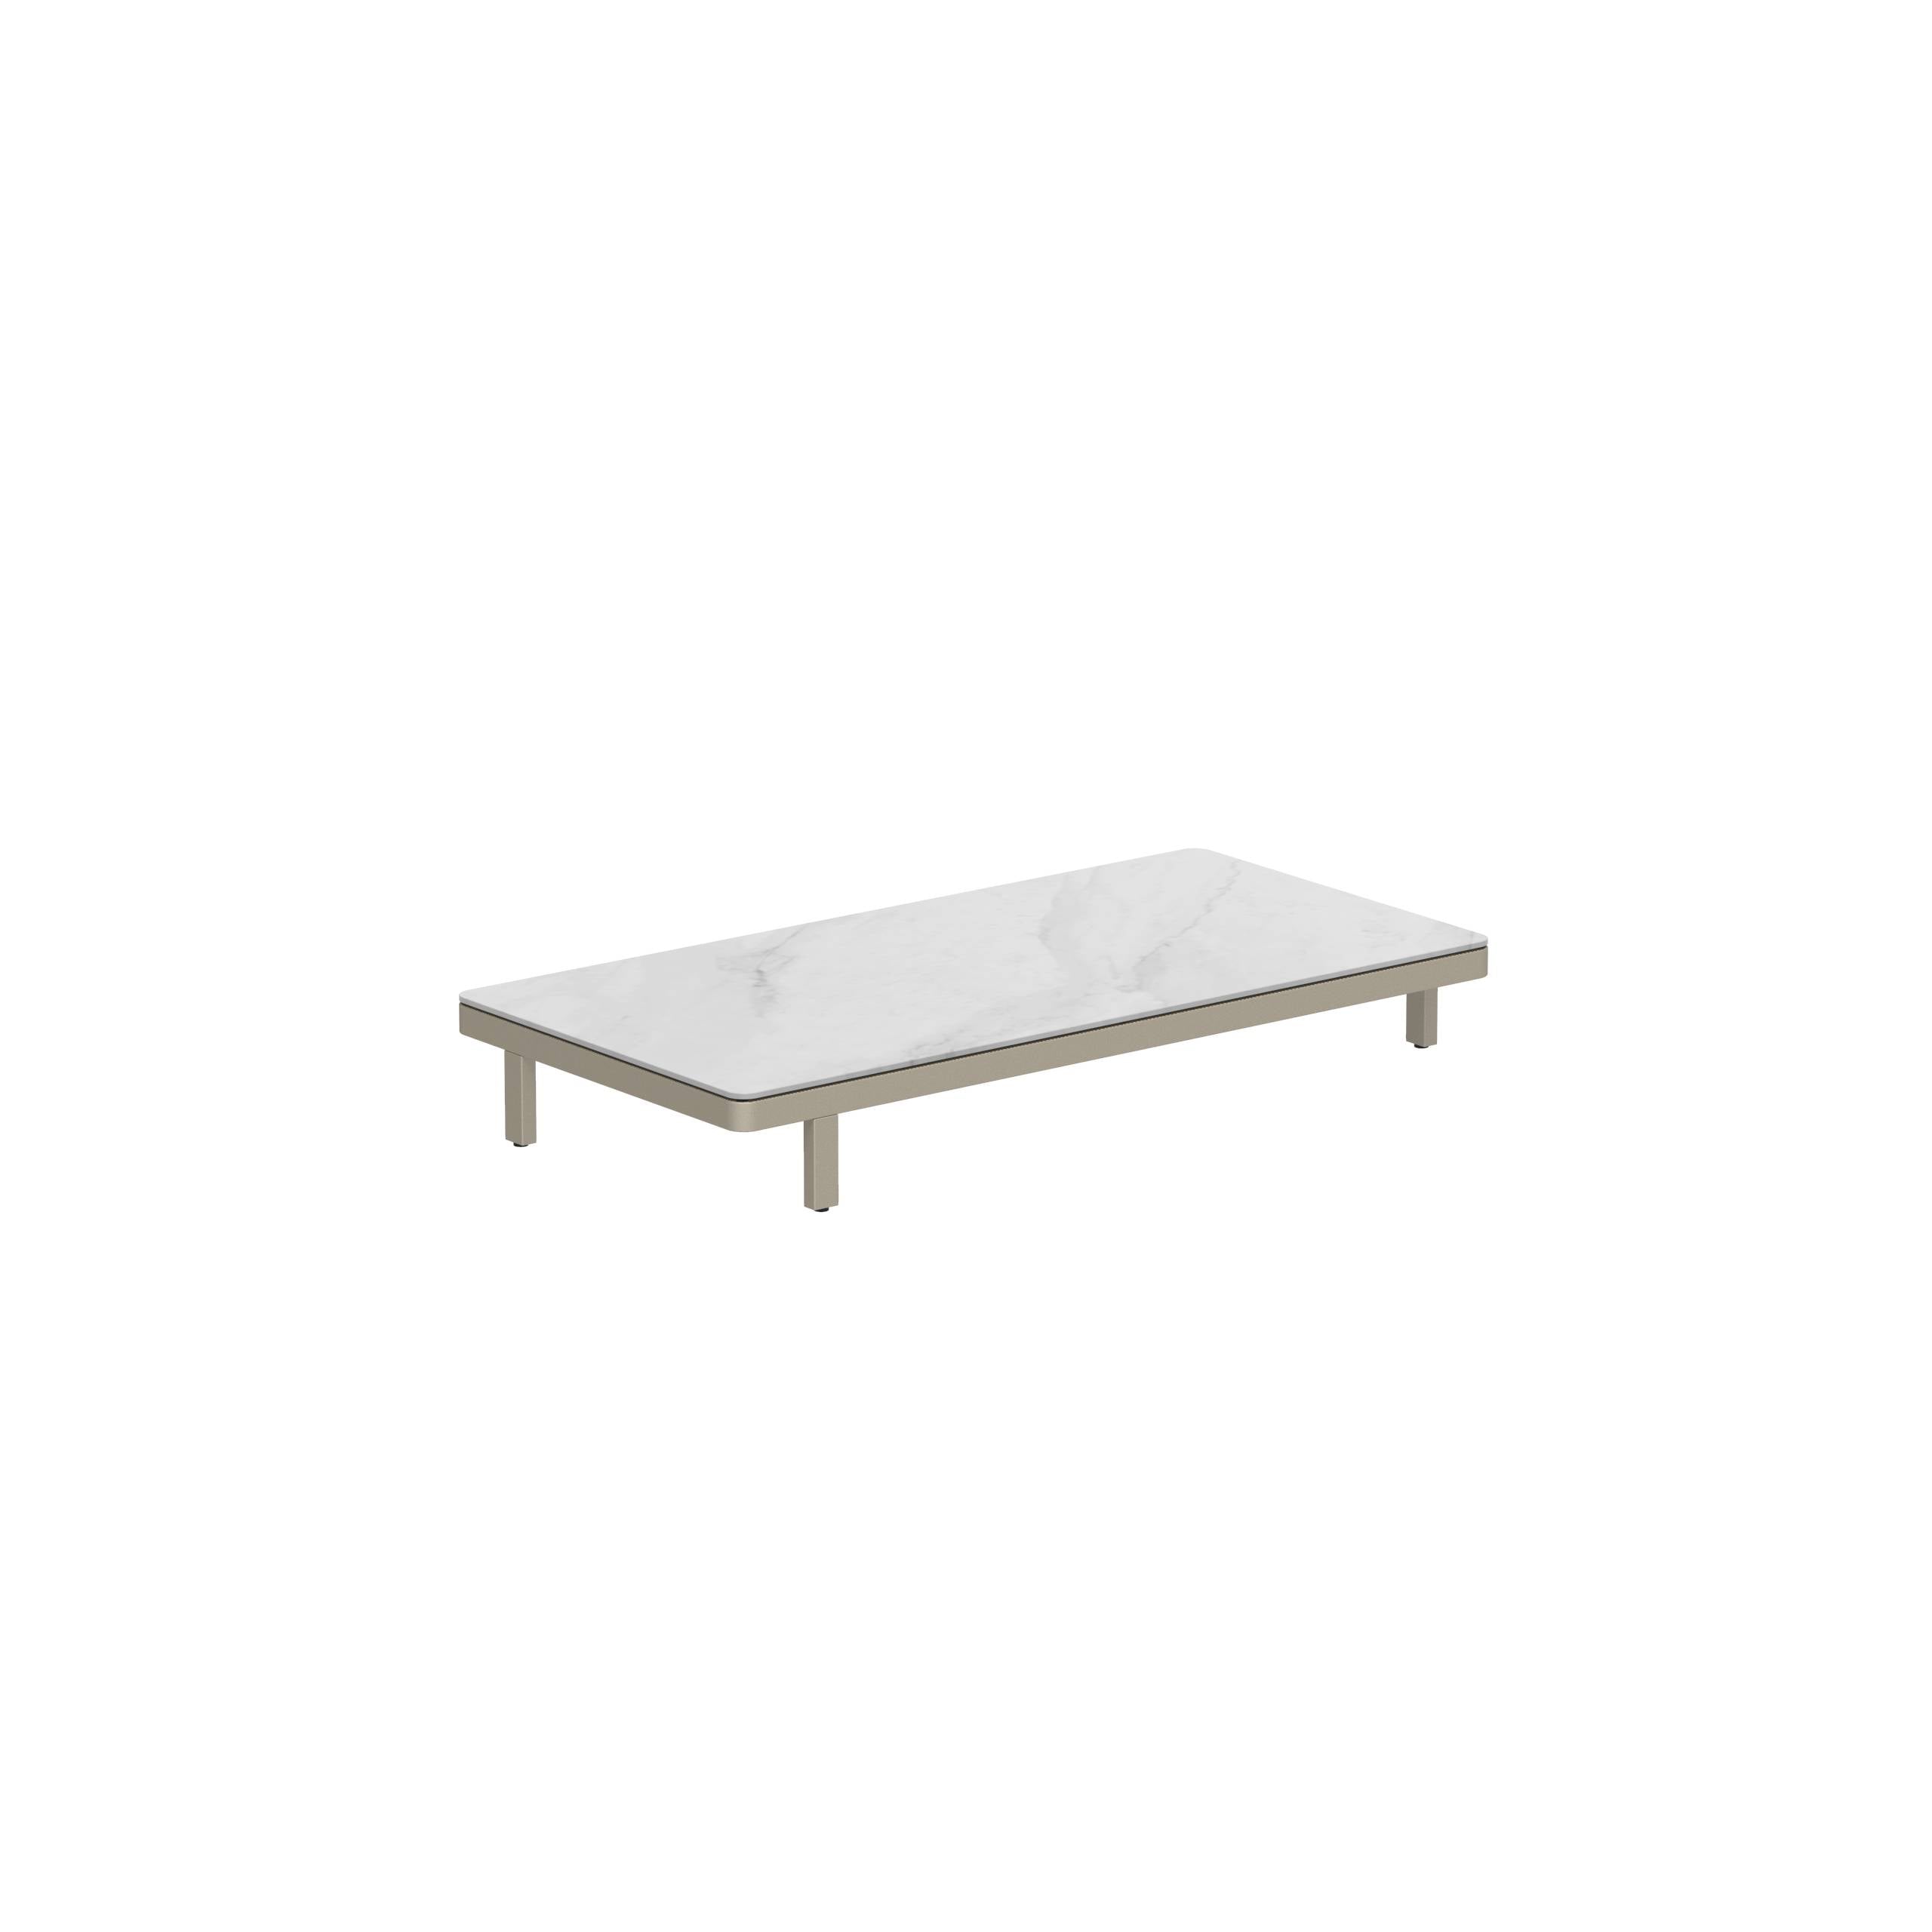 Alura Lounge 160 Ltl Table 160x80x23cm Sand Ceramic Tabletop Bianco Statuario